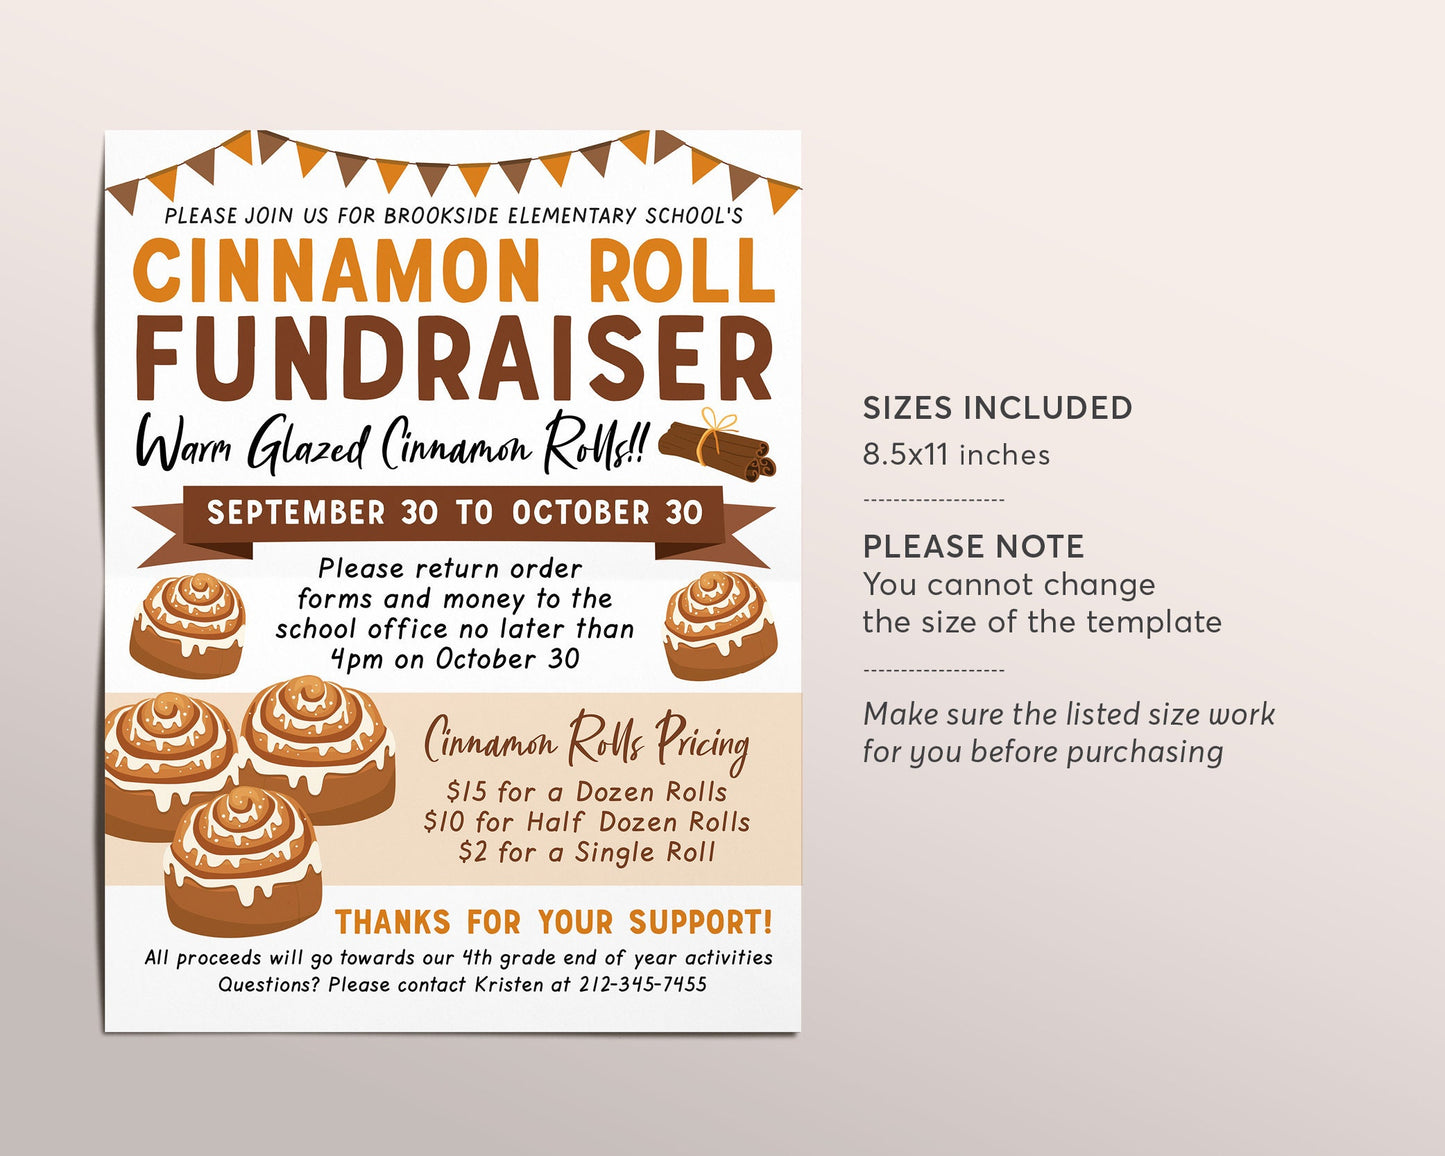 Cinnamon Roll Fundraiser Flyer Editable Template, Cinnamon Buns Sticky Bun, School Church PTA PTO Sports Team Charity Event Bake Sale